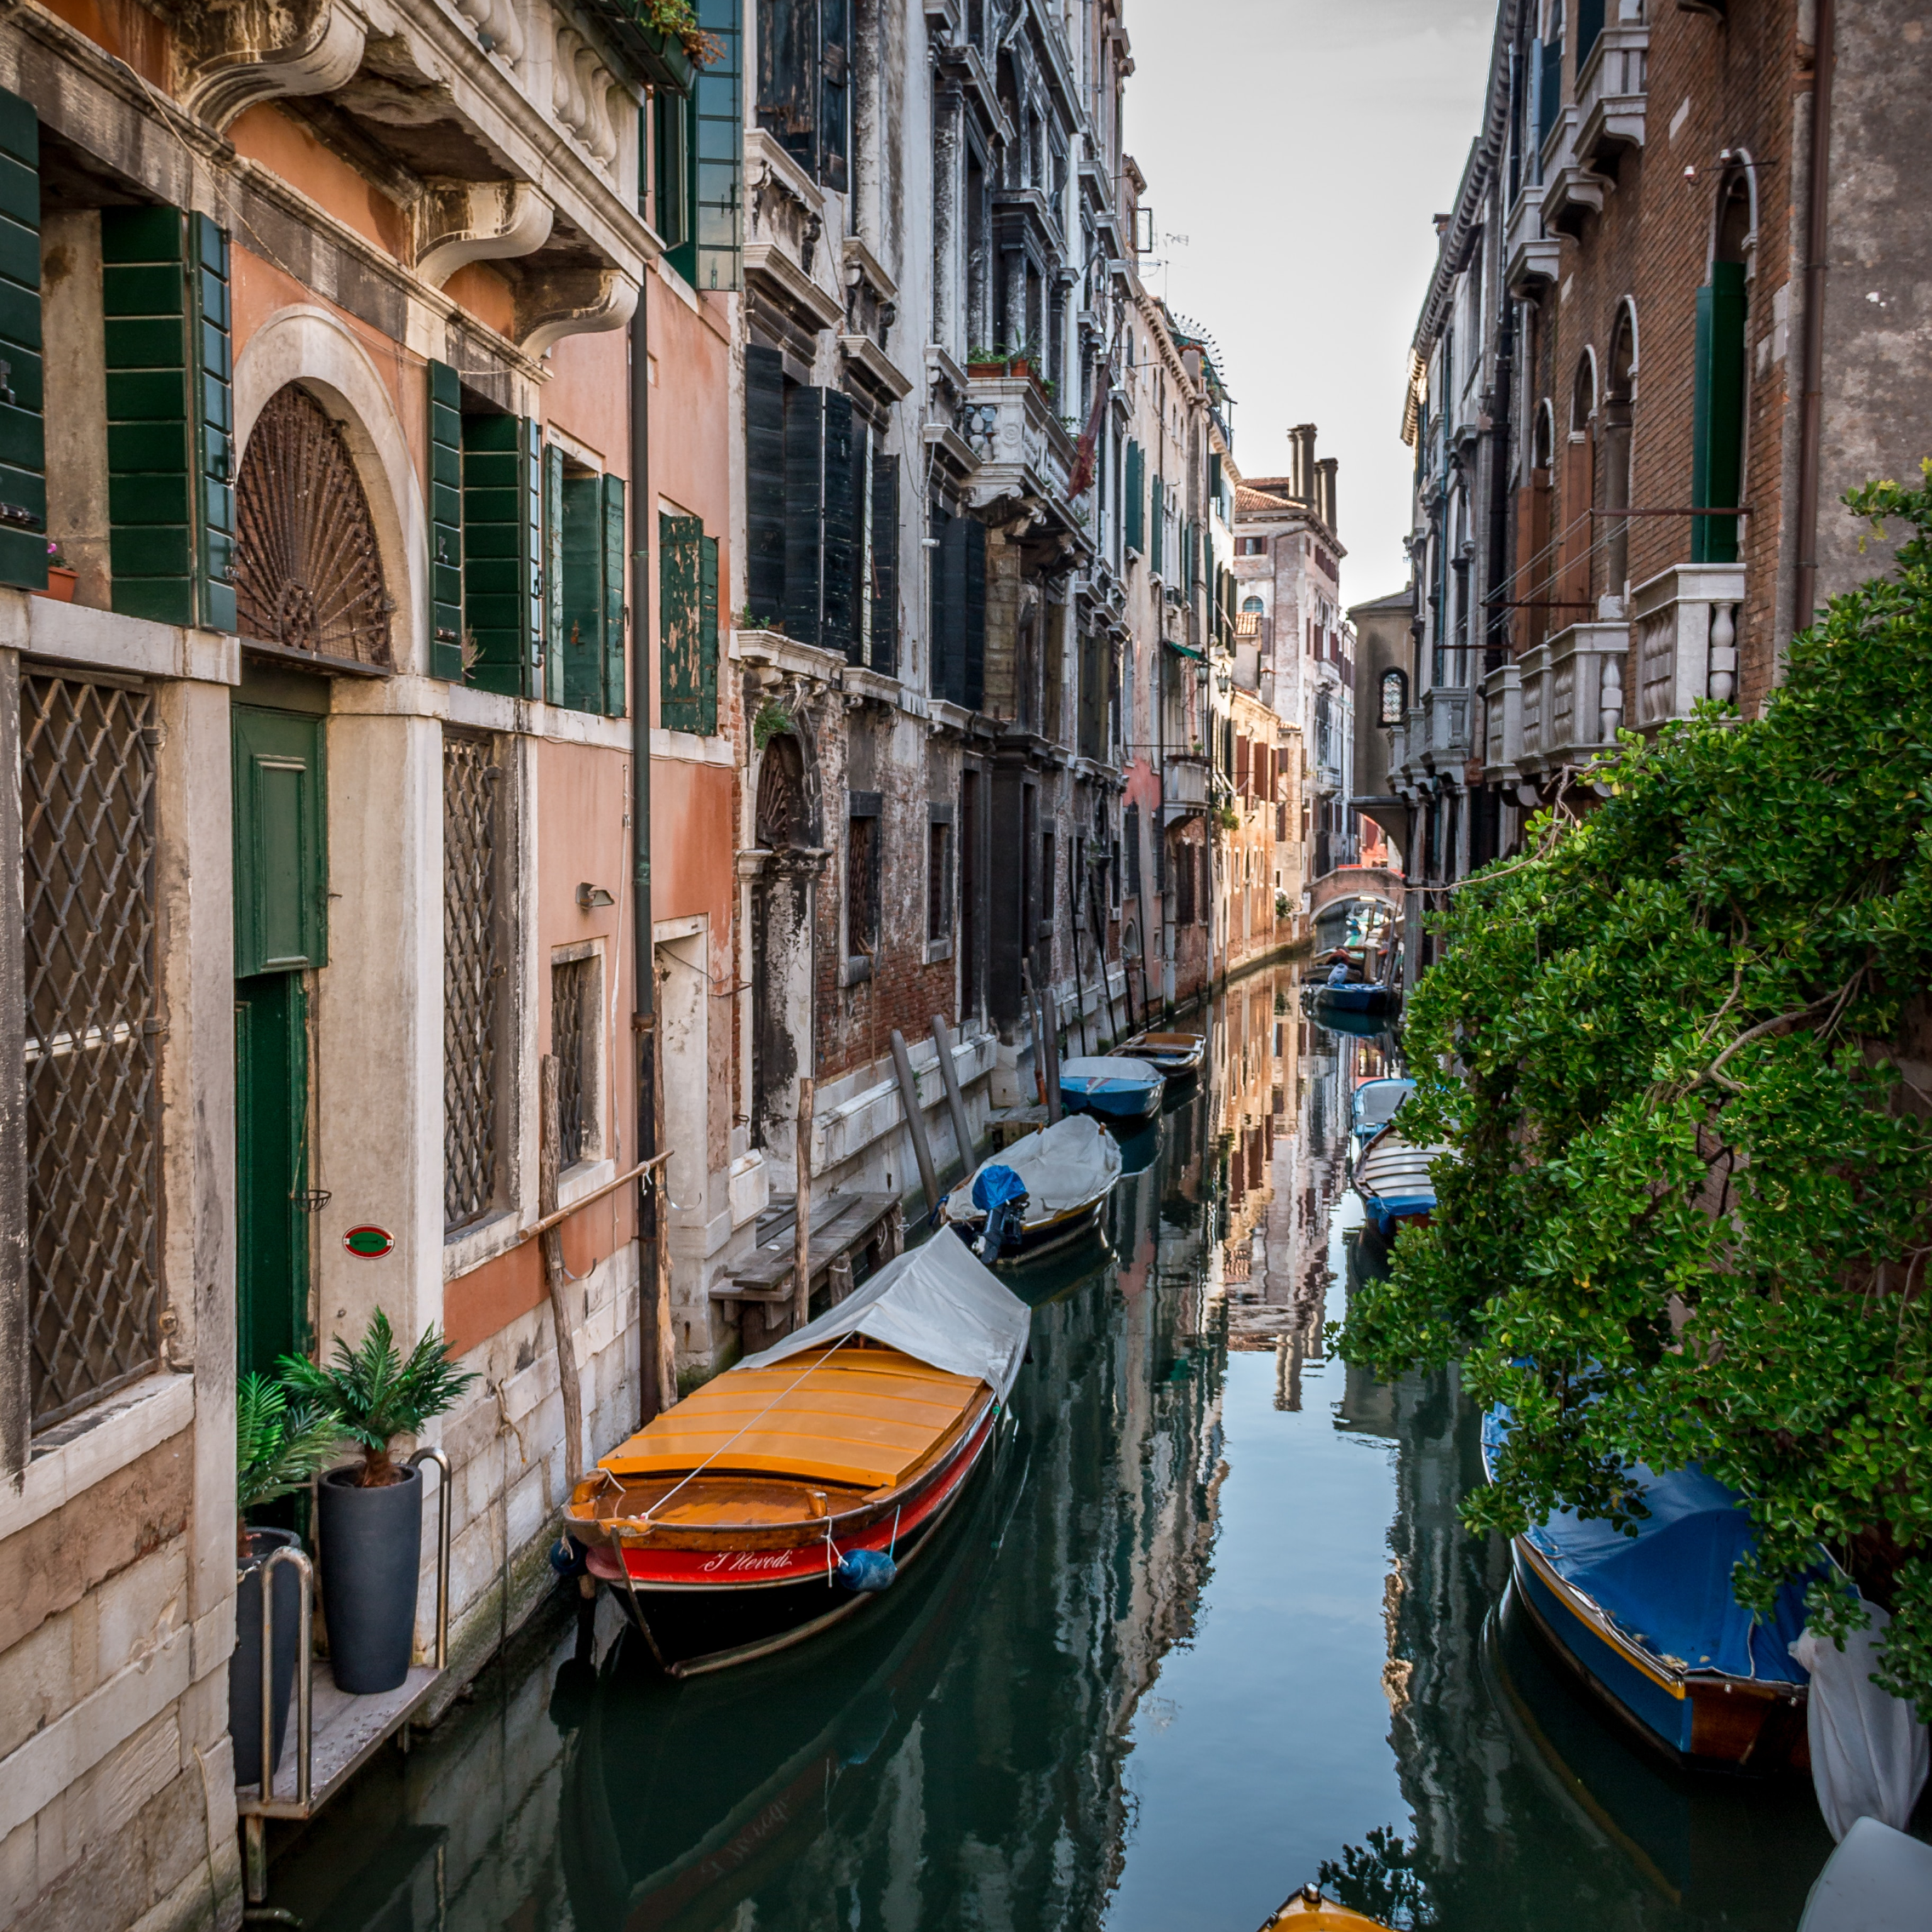 Bryllupsrejse i romantiske Venedig, Italien med kanaler, gondoler og solnedgang